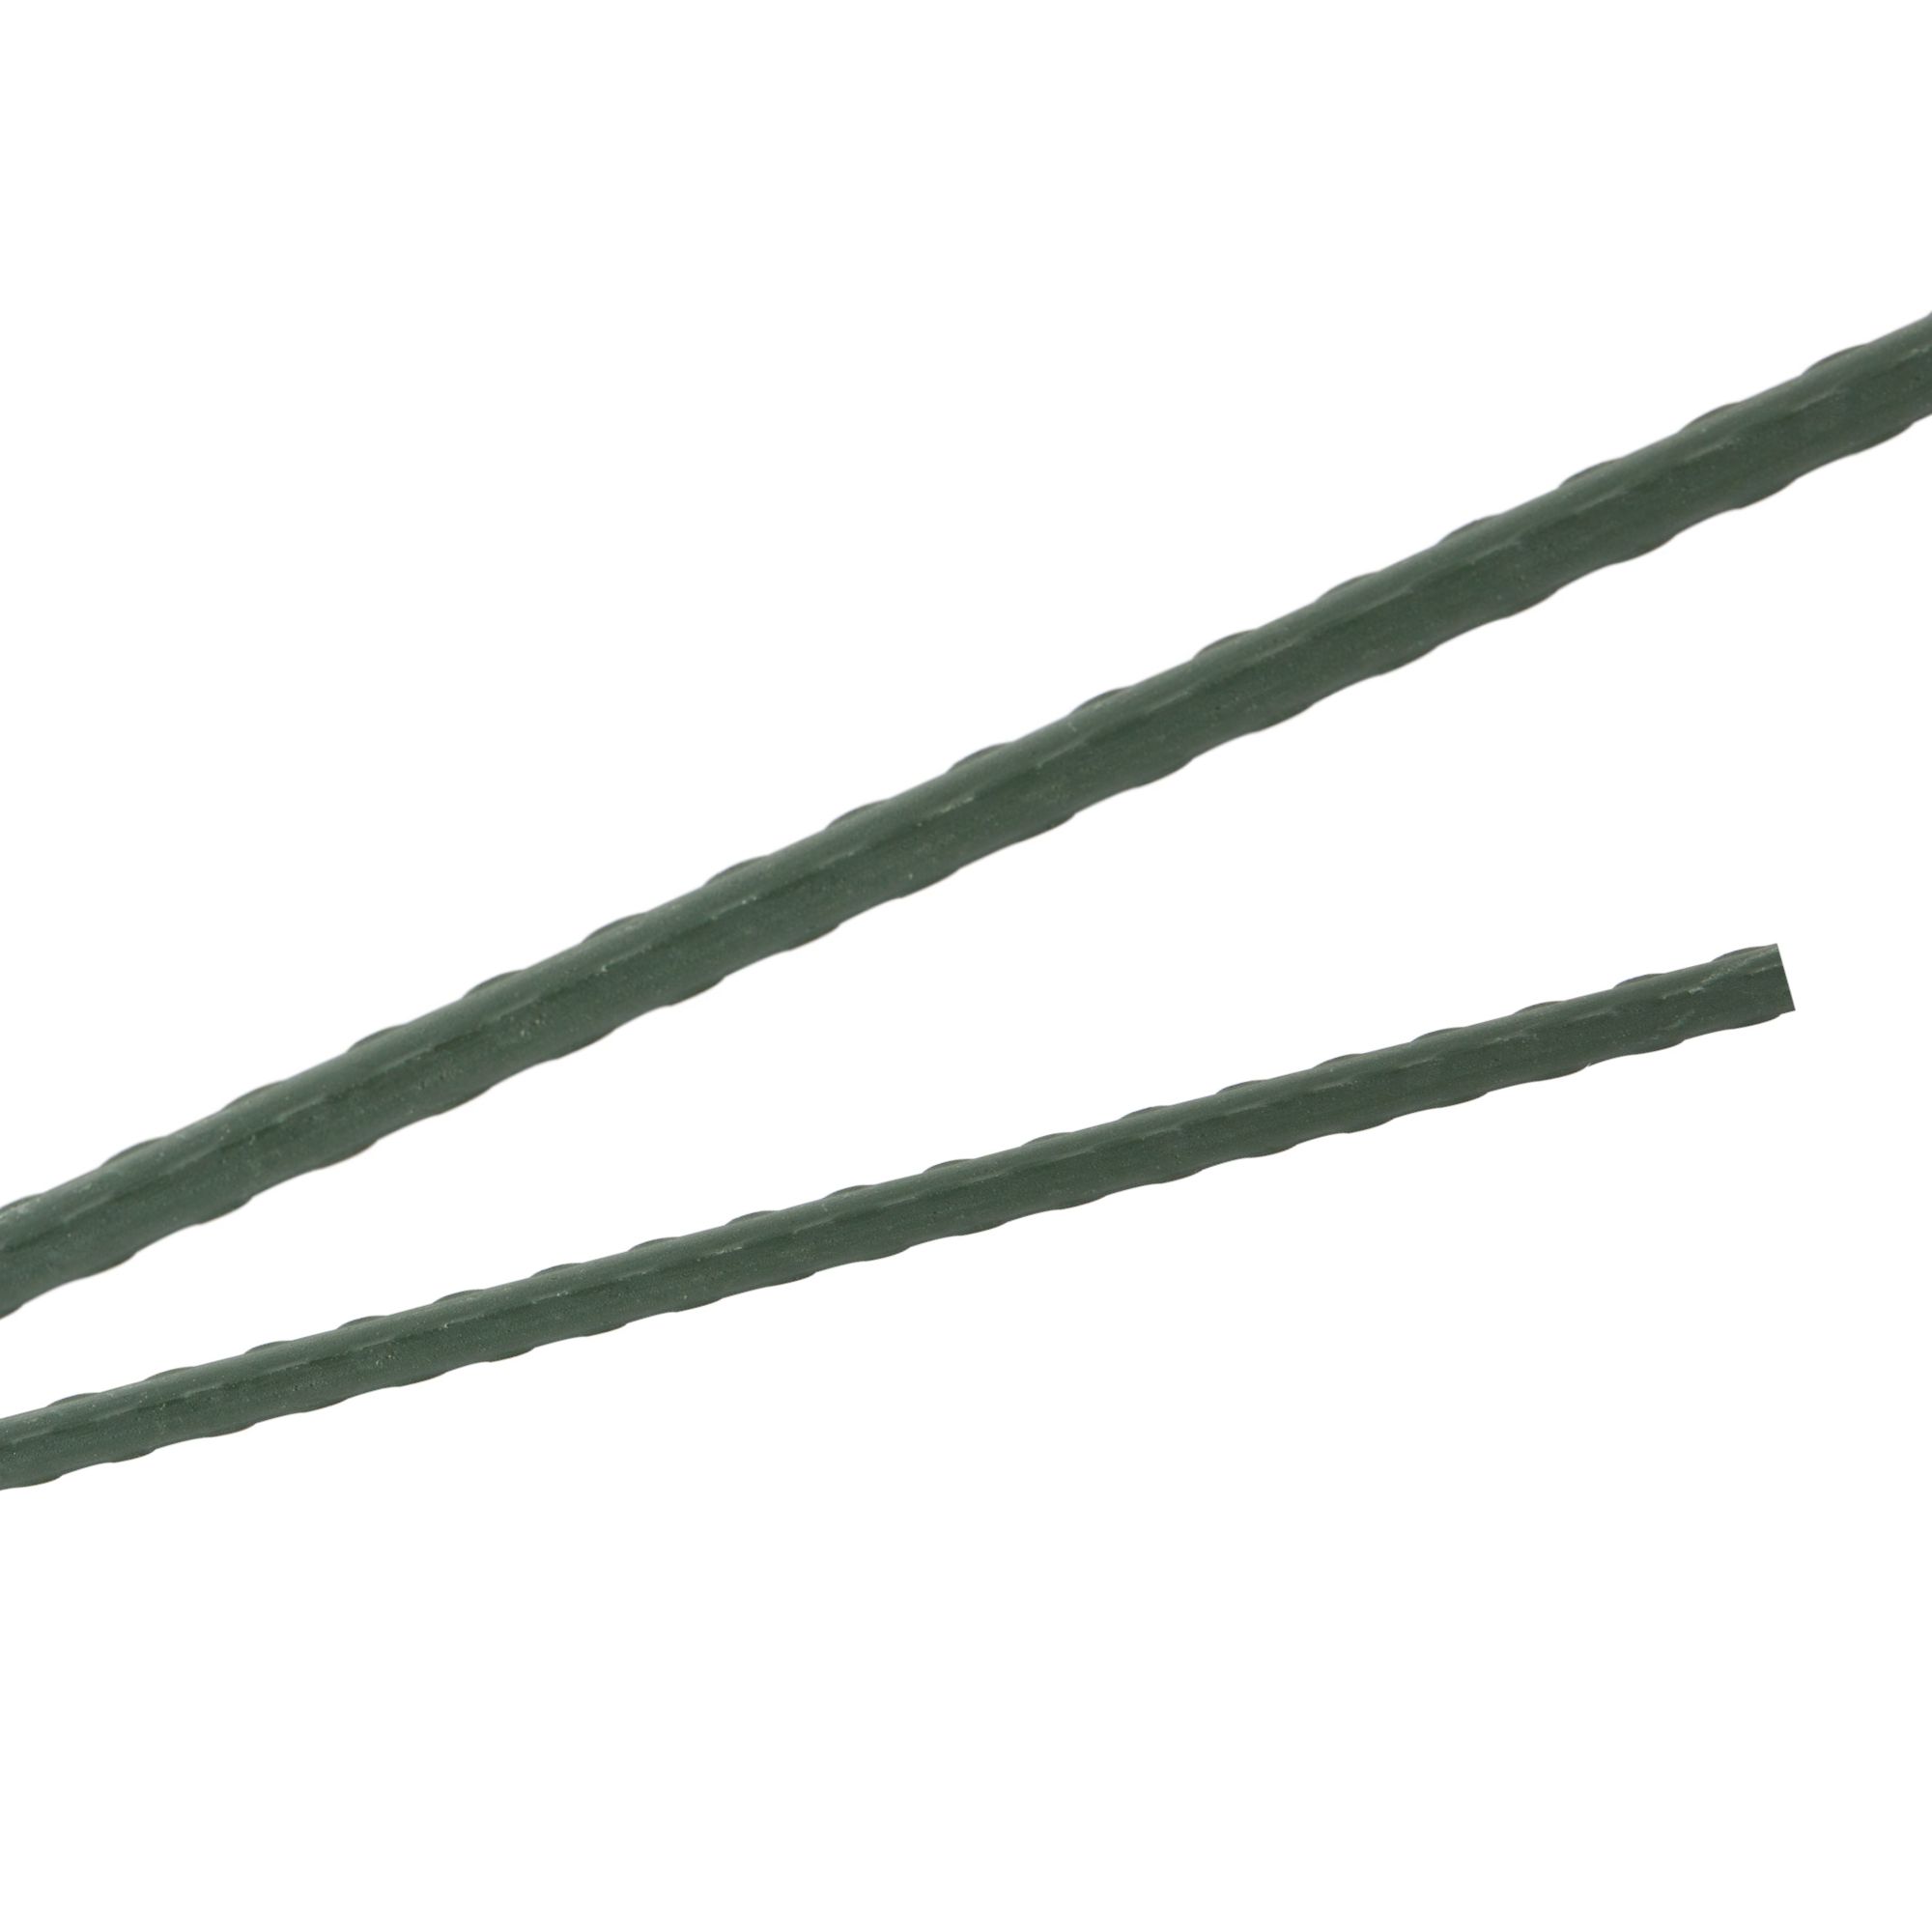 Tyč podpěrná, 16mm, 150cm, kov+PVC, zelená 0.212000 Kg GIGA Sklad20 32014 188